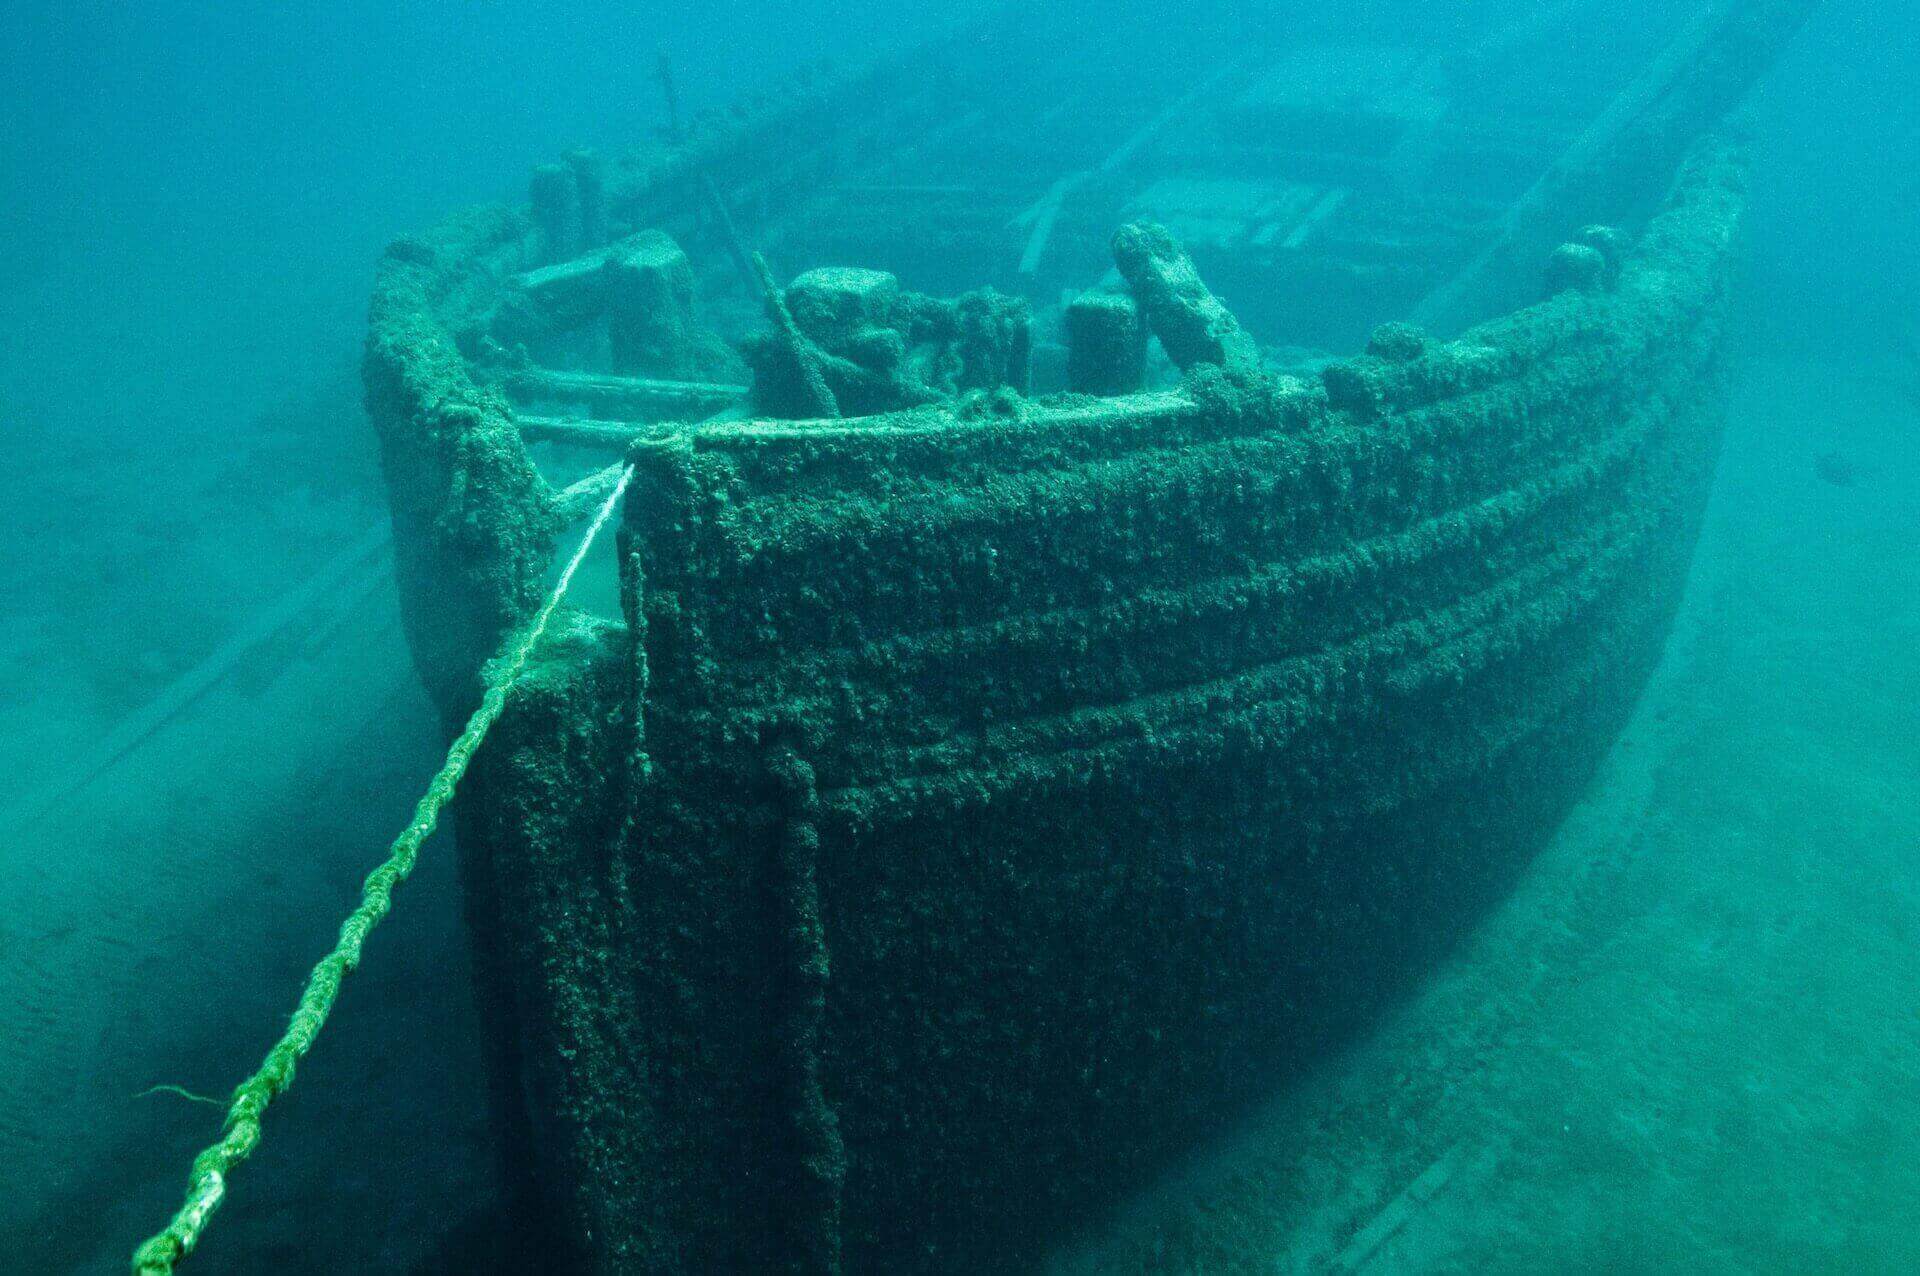  Underwater shipwreck 